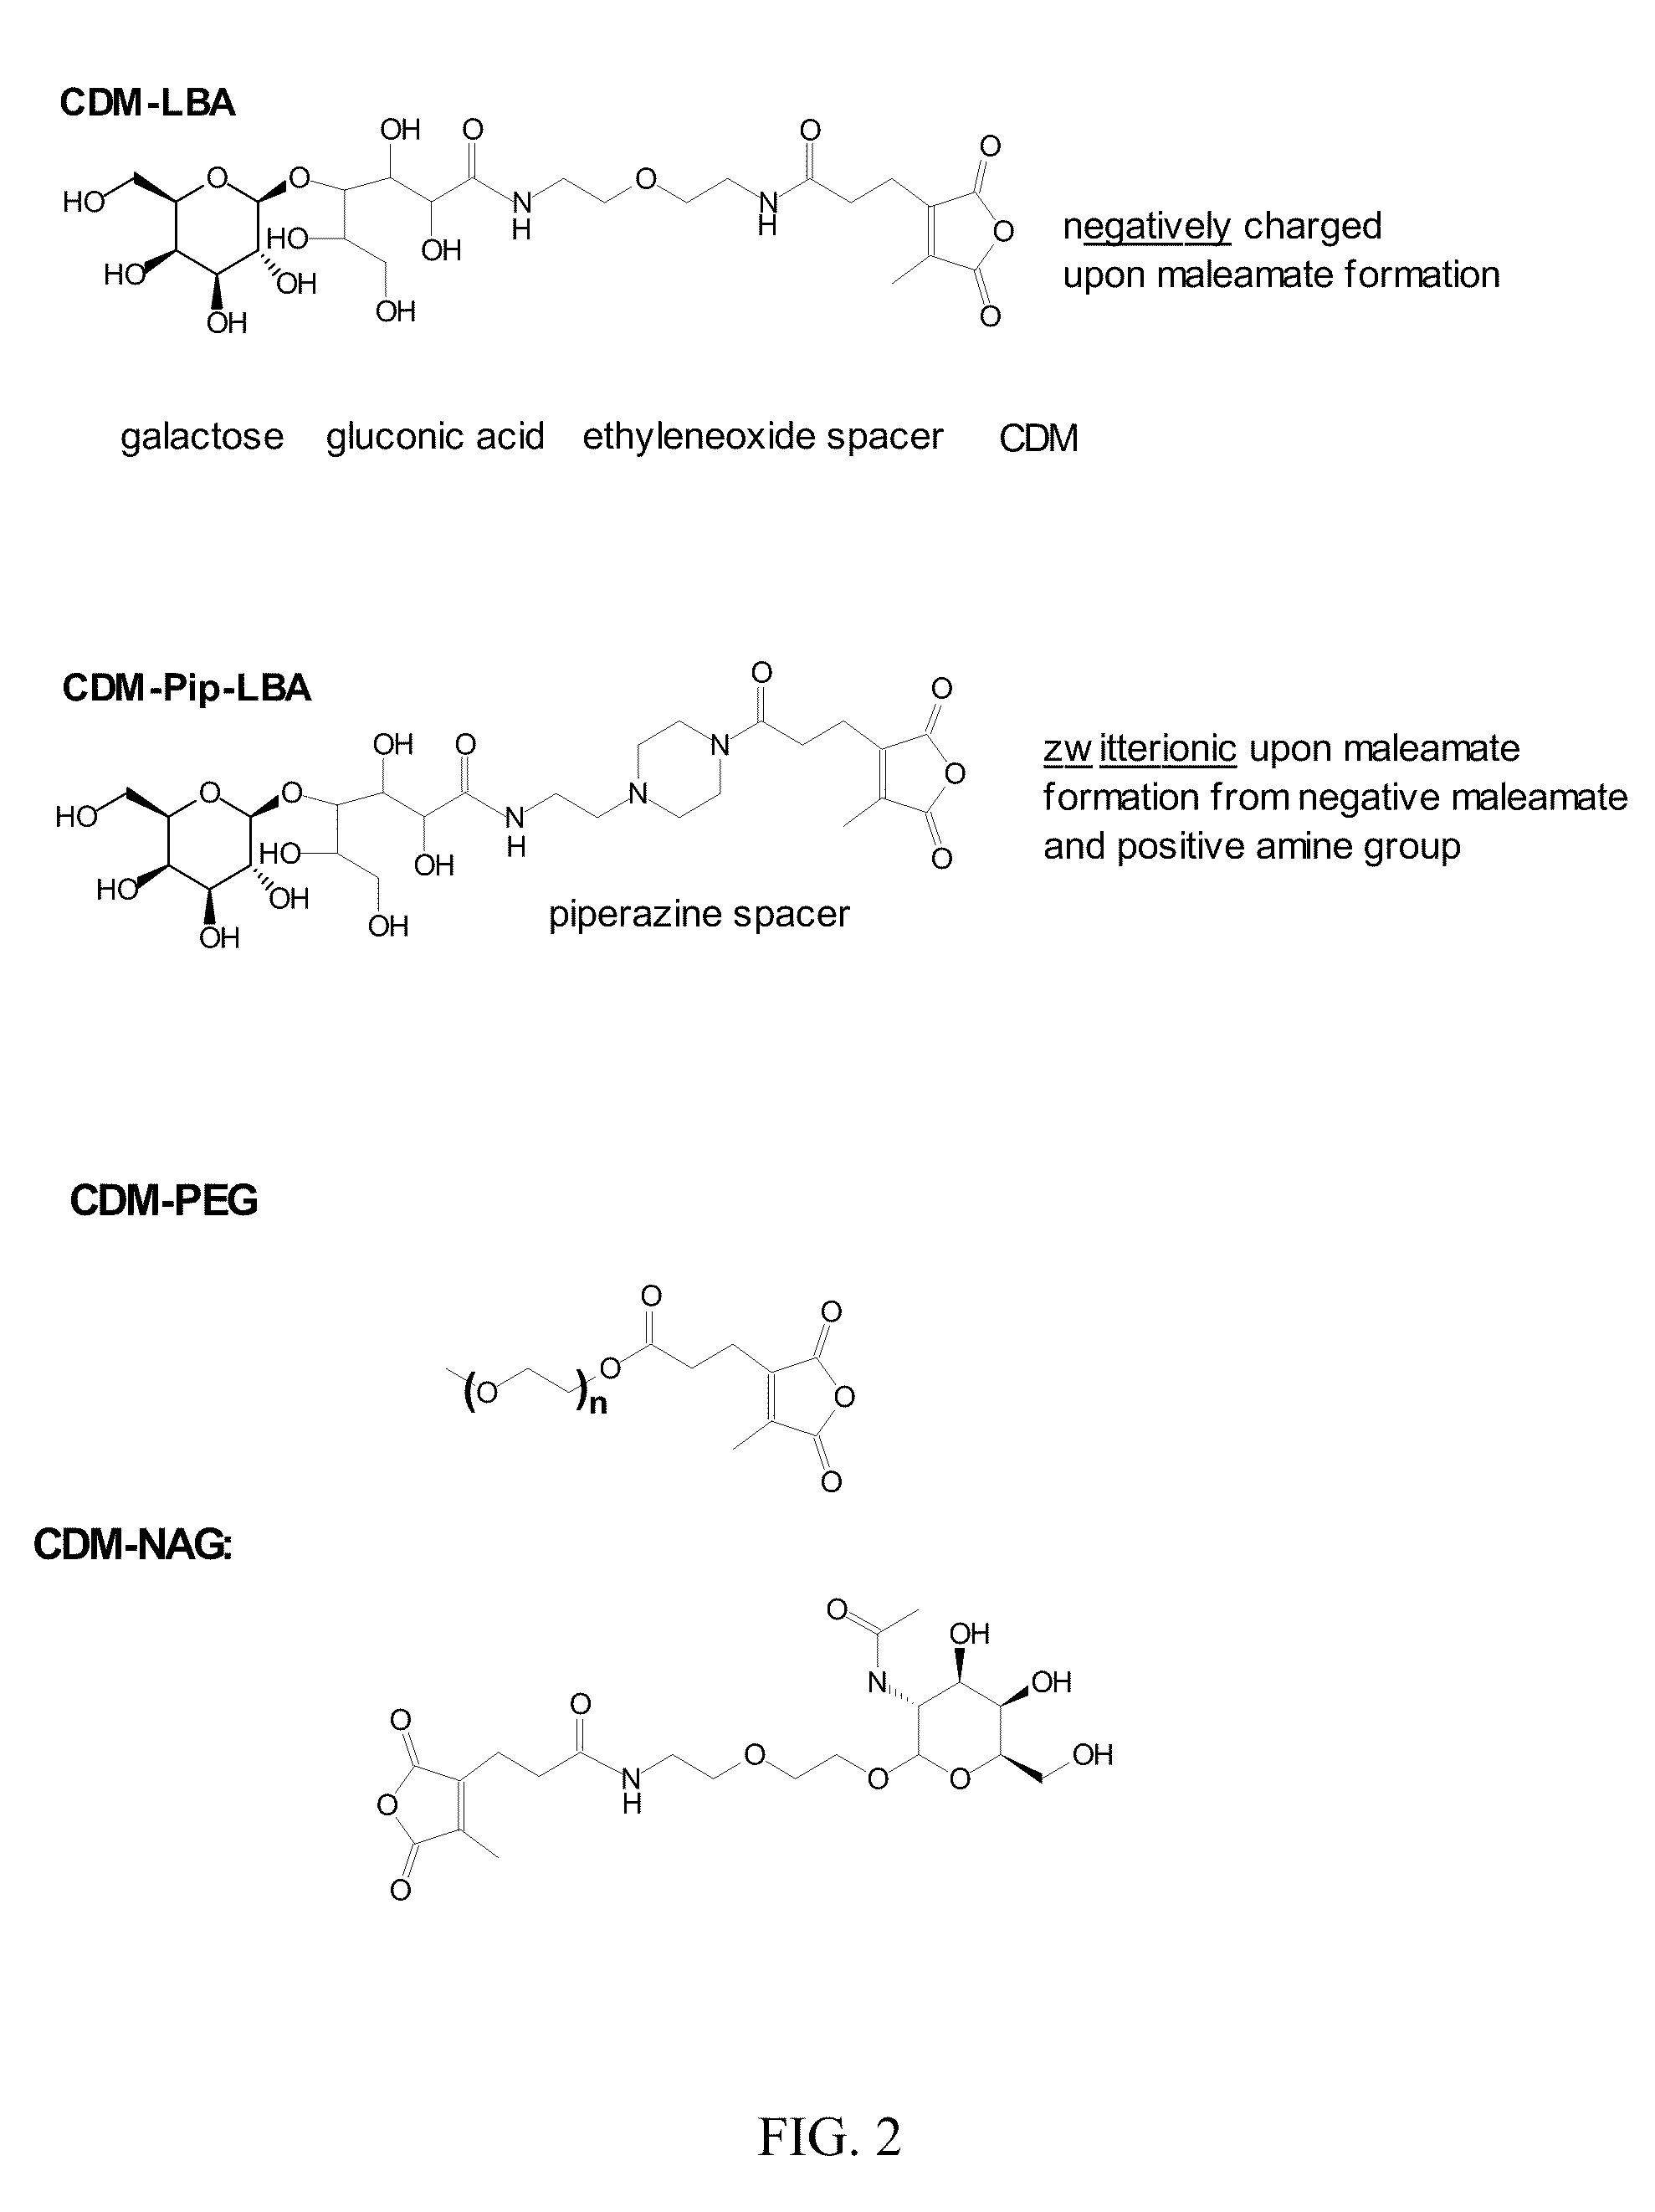 Endosomolytic poly(vinyl ether) polymers